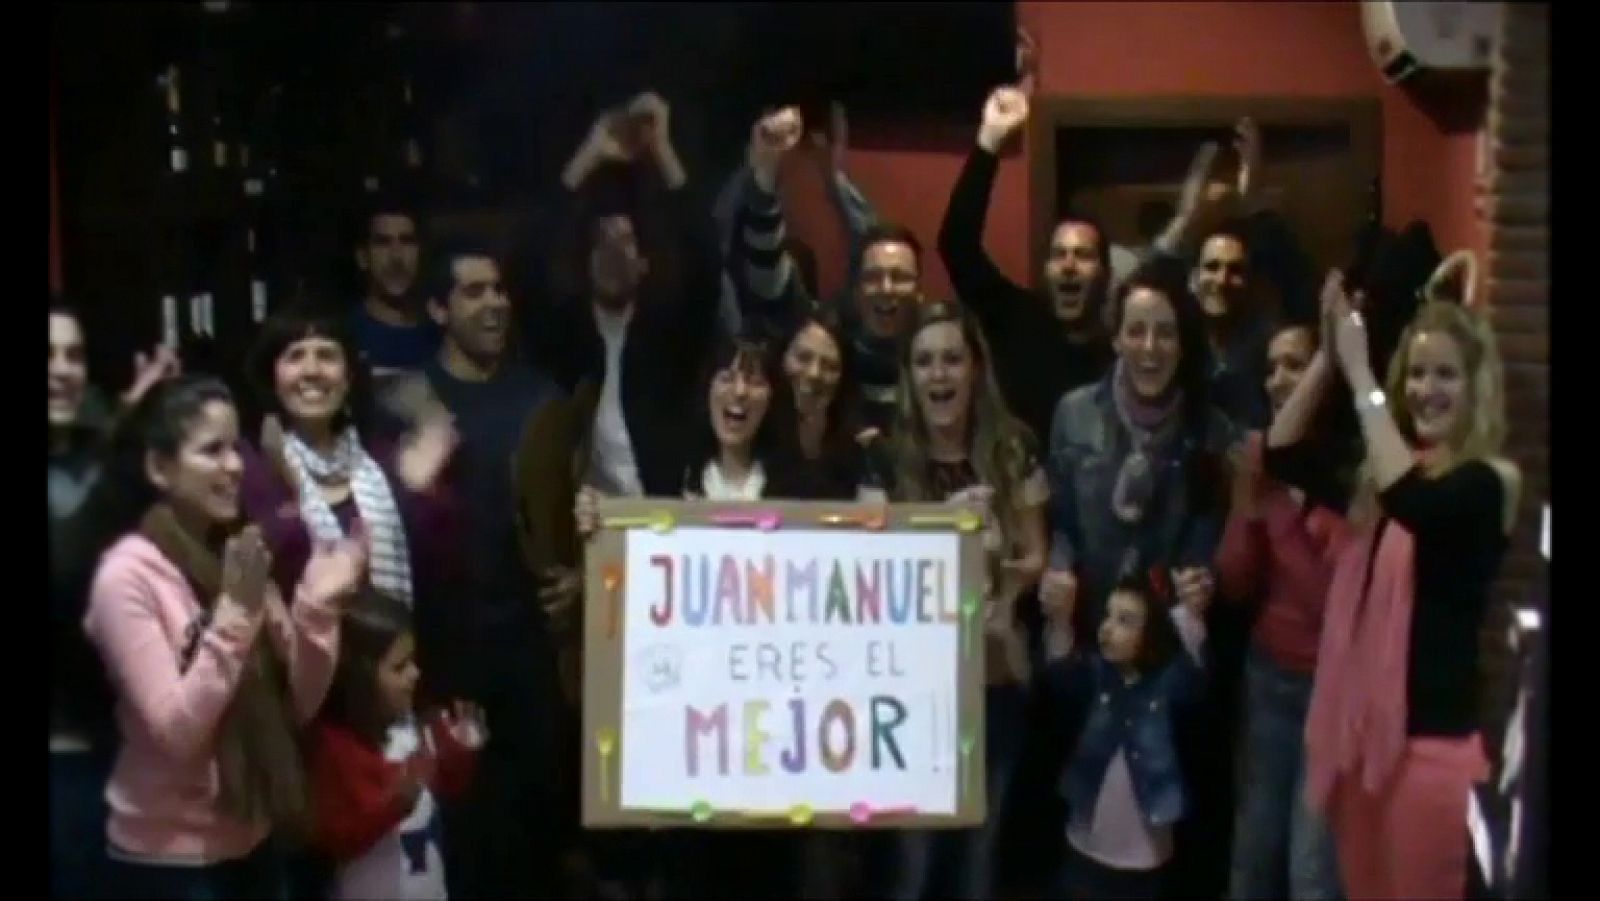 MasterChef - Vídeo de los familiares de Juan Manuel